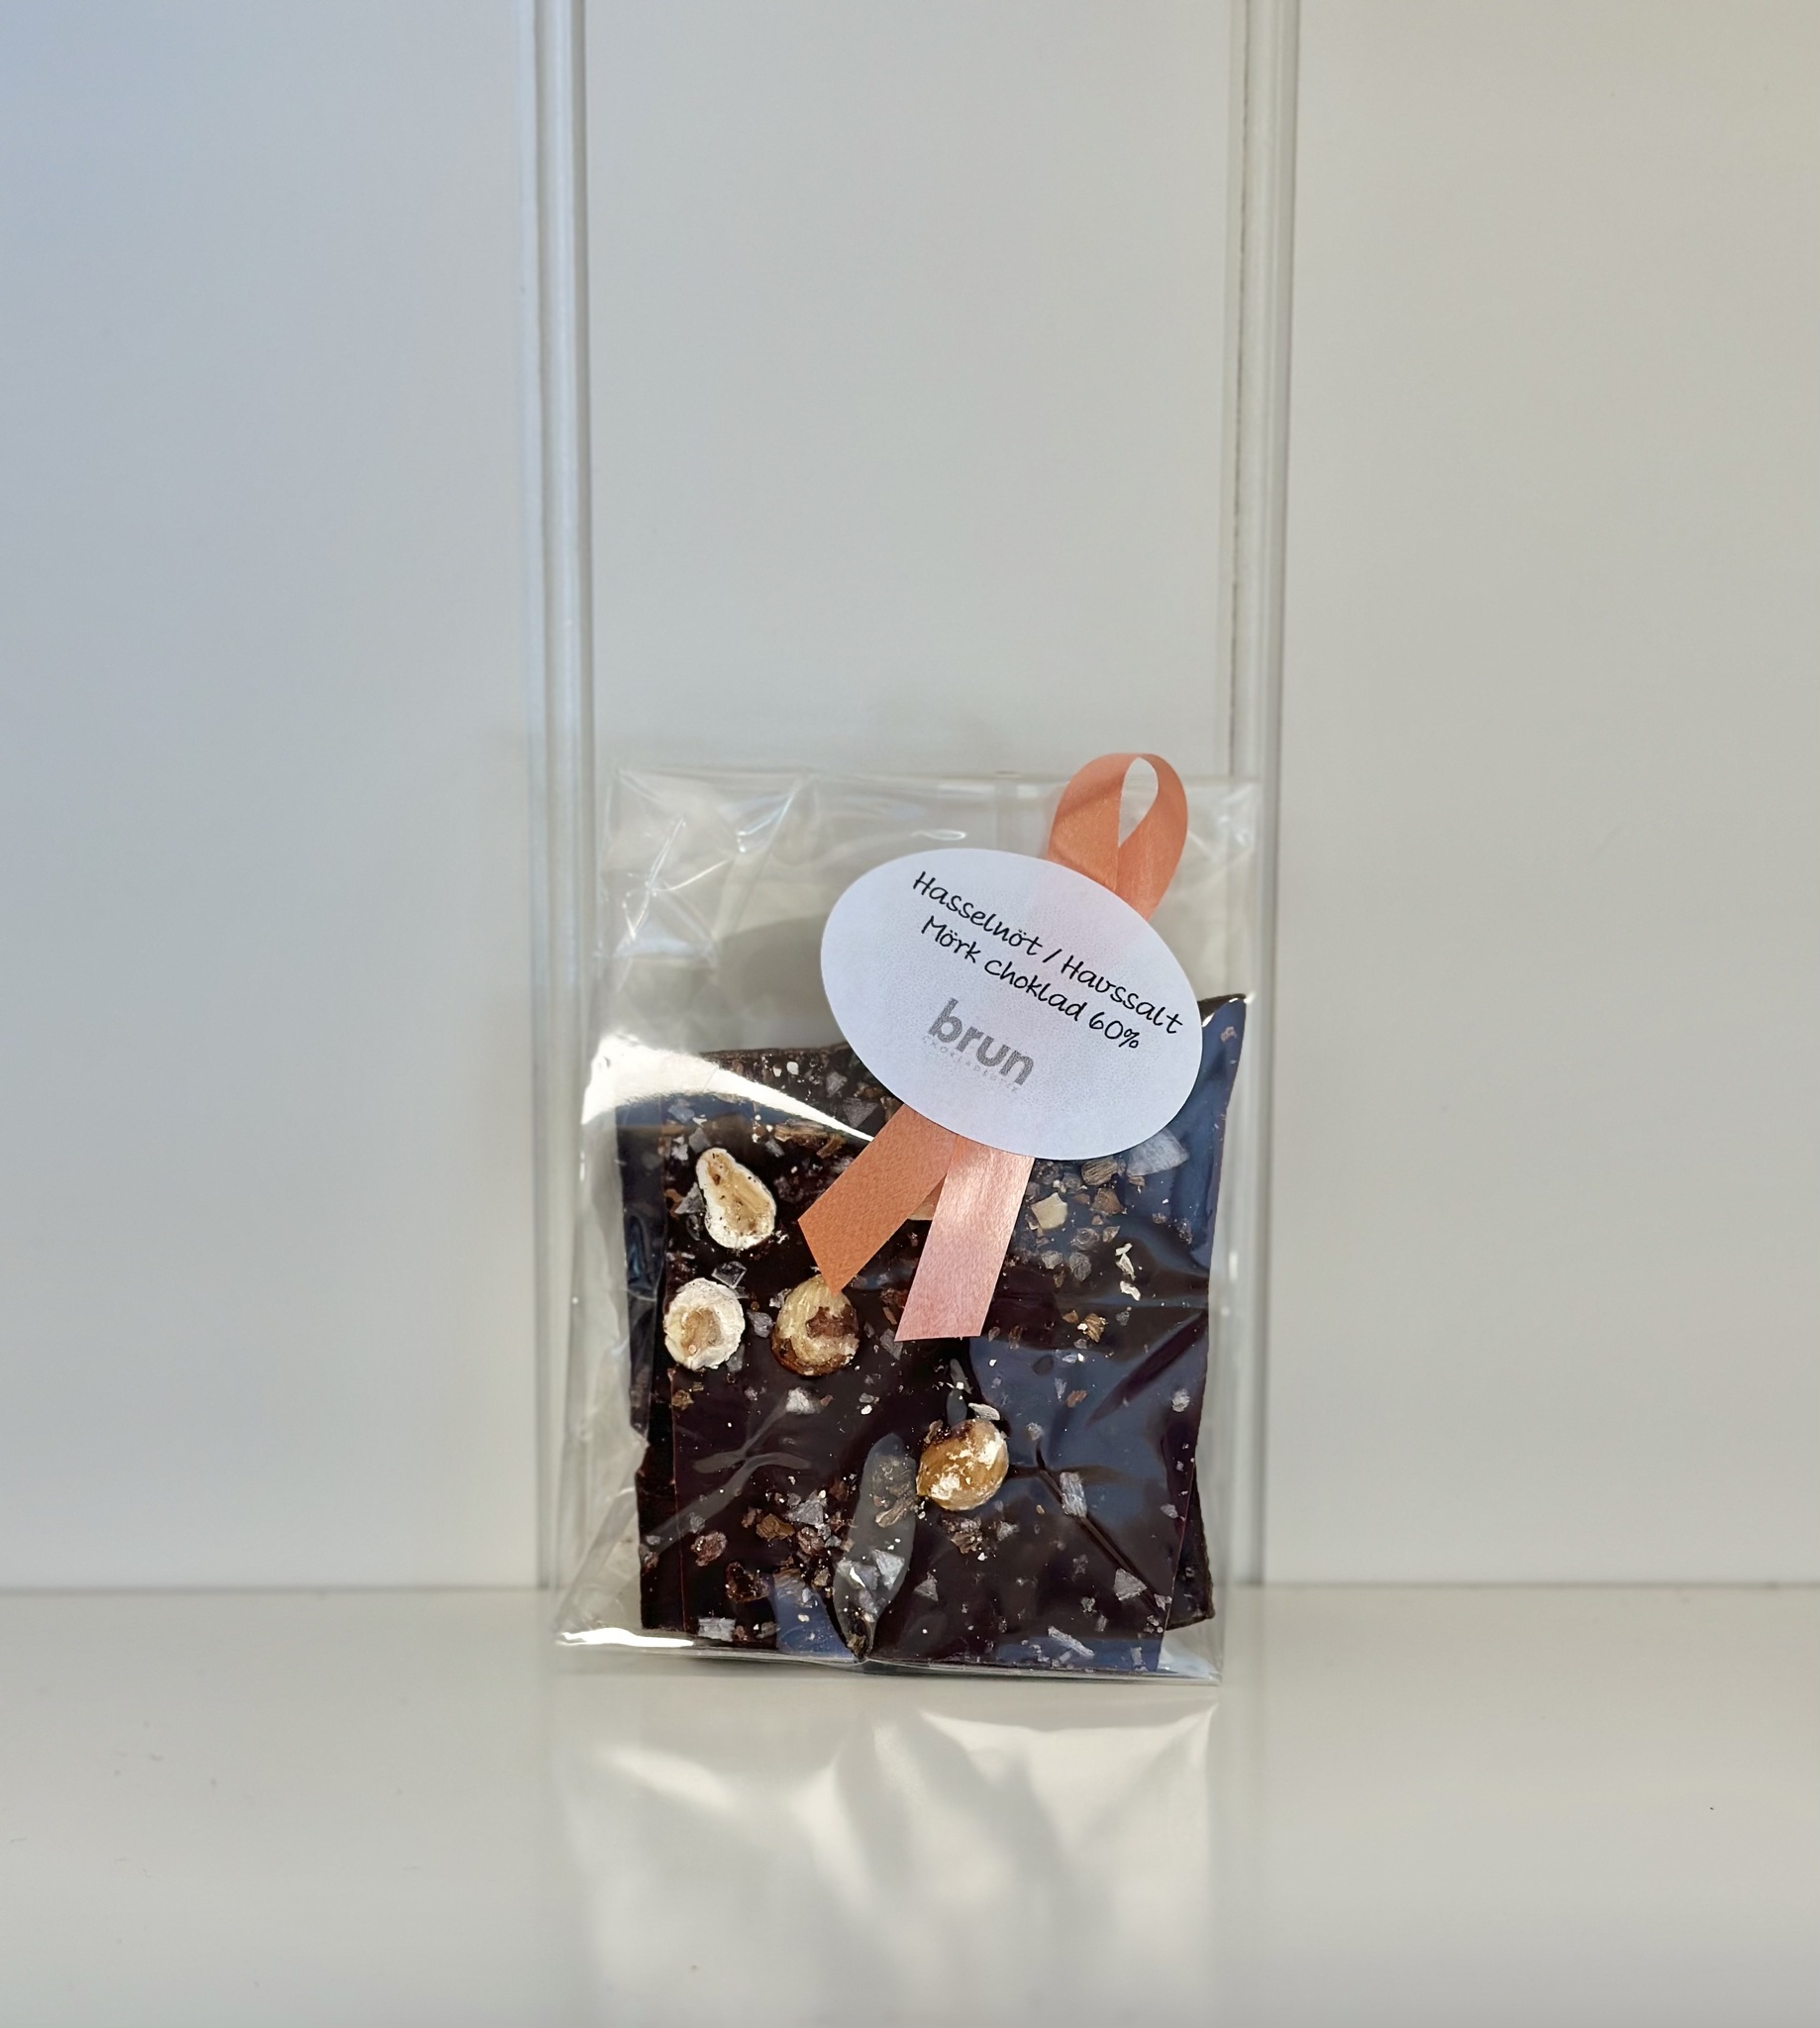 Vår egen: Chokladbräck med Hasselnötter & havssalt i 60% mörk choklad